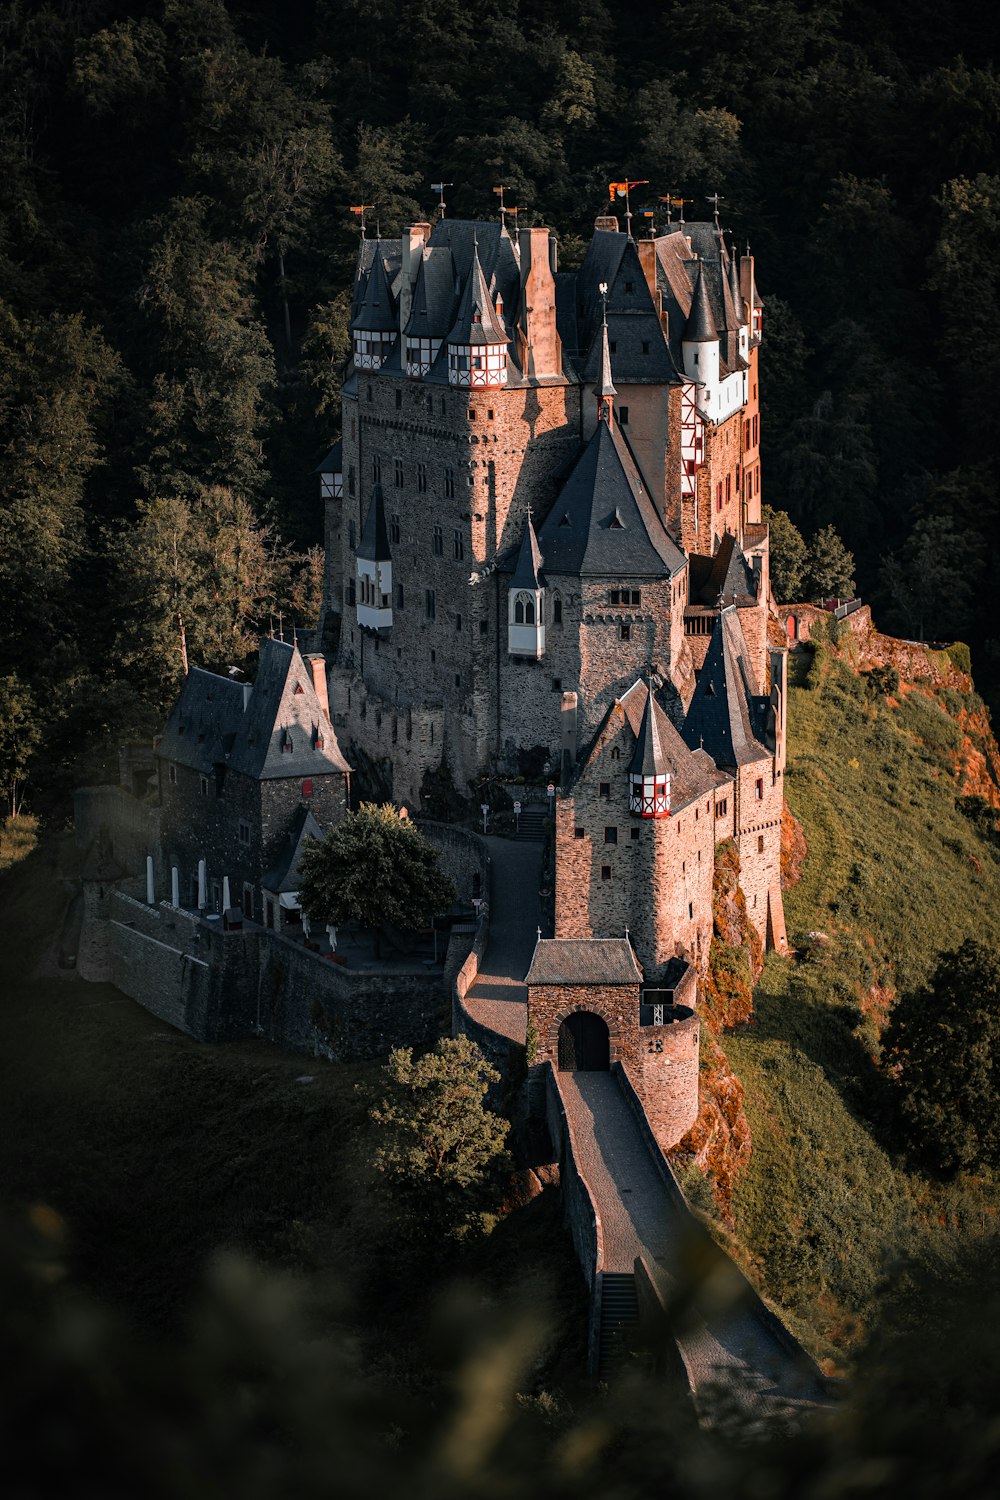 Una veduta aerea di un castello nel mezzo di una foresta